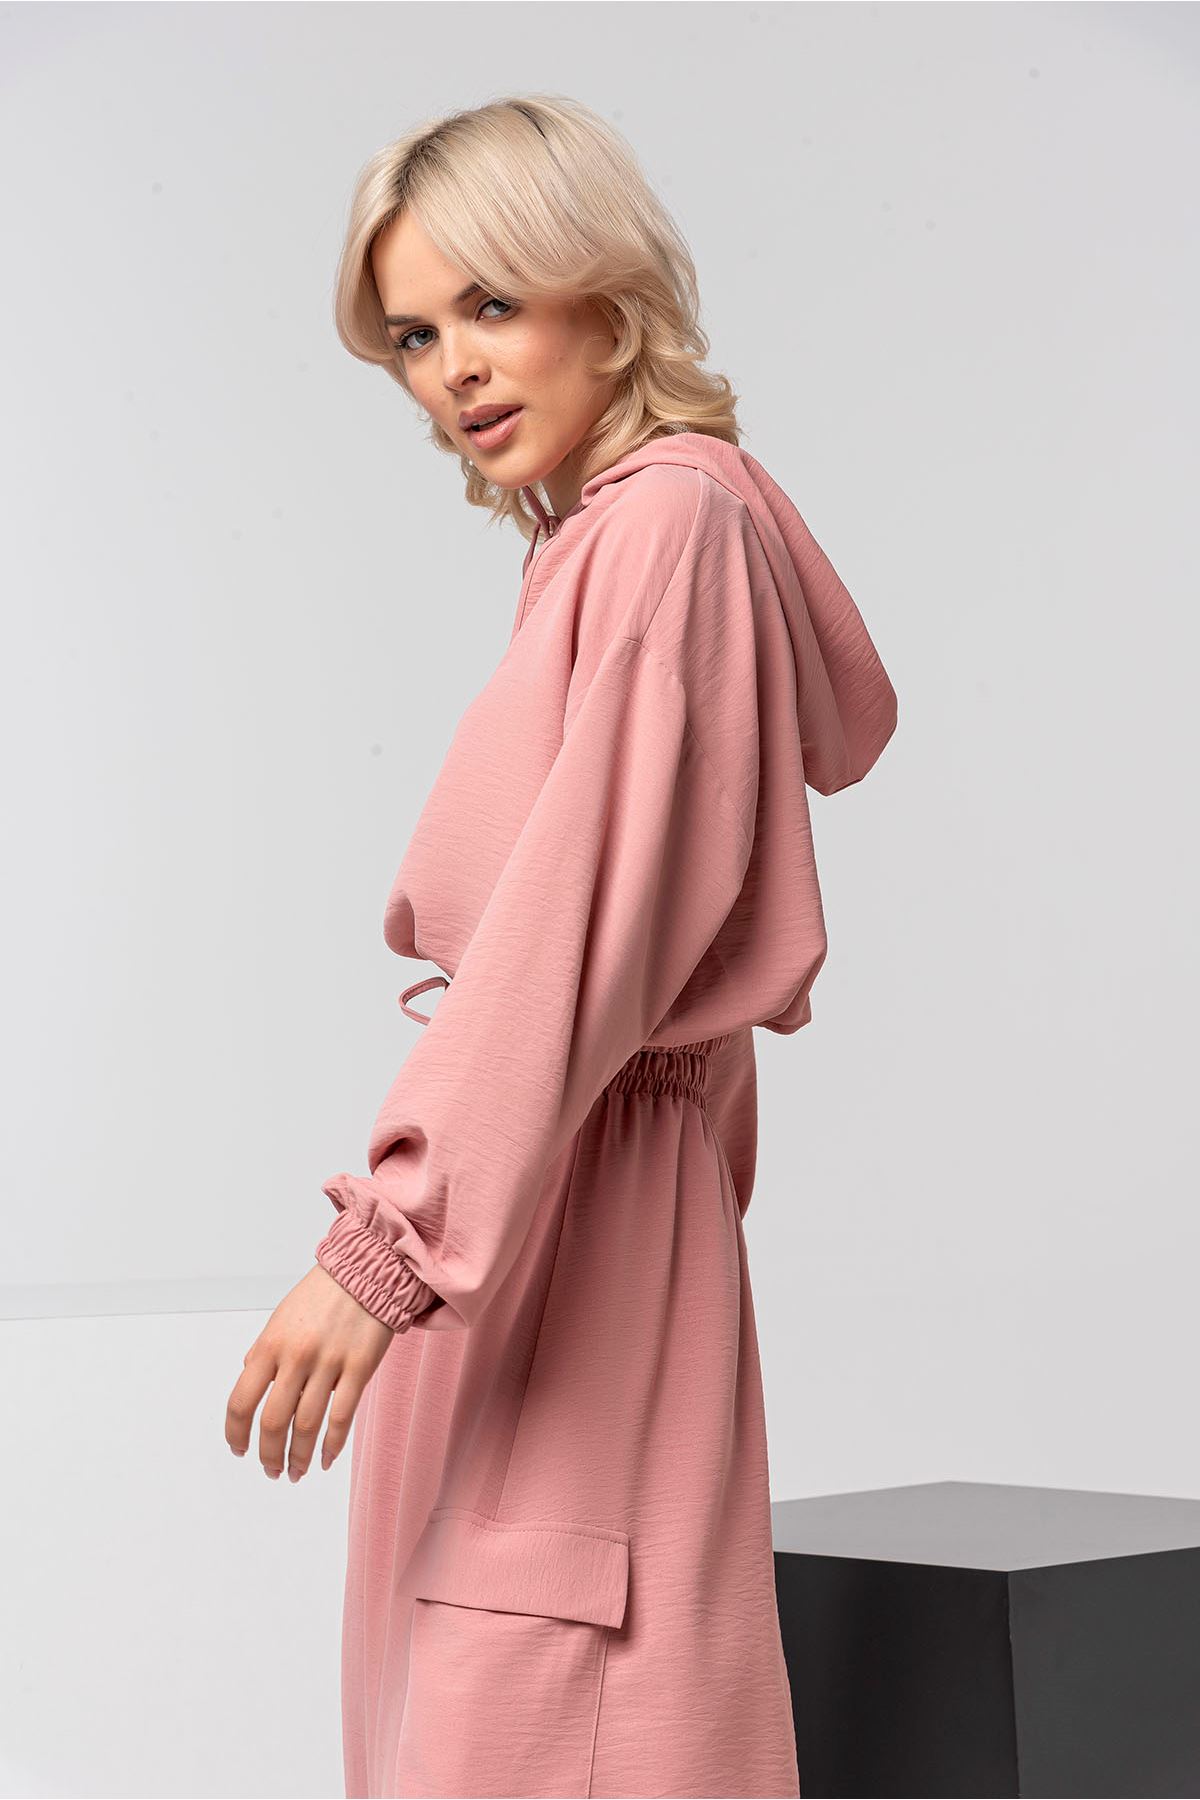 Аэробин Ткань длинный рукав с капюшоном женская блузка - Светло розовый